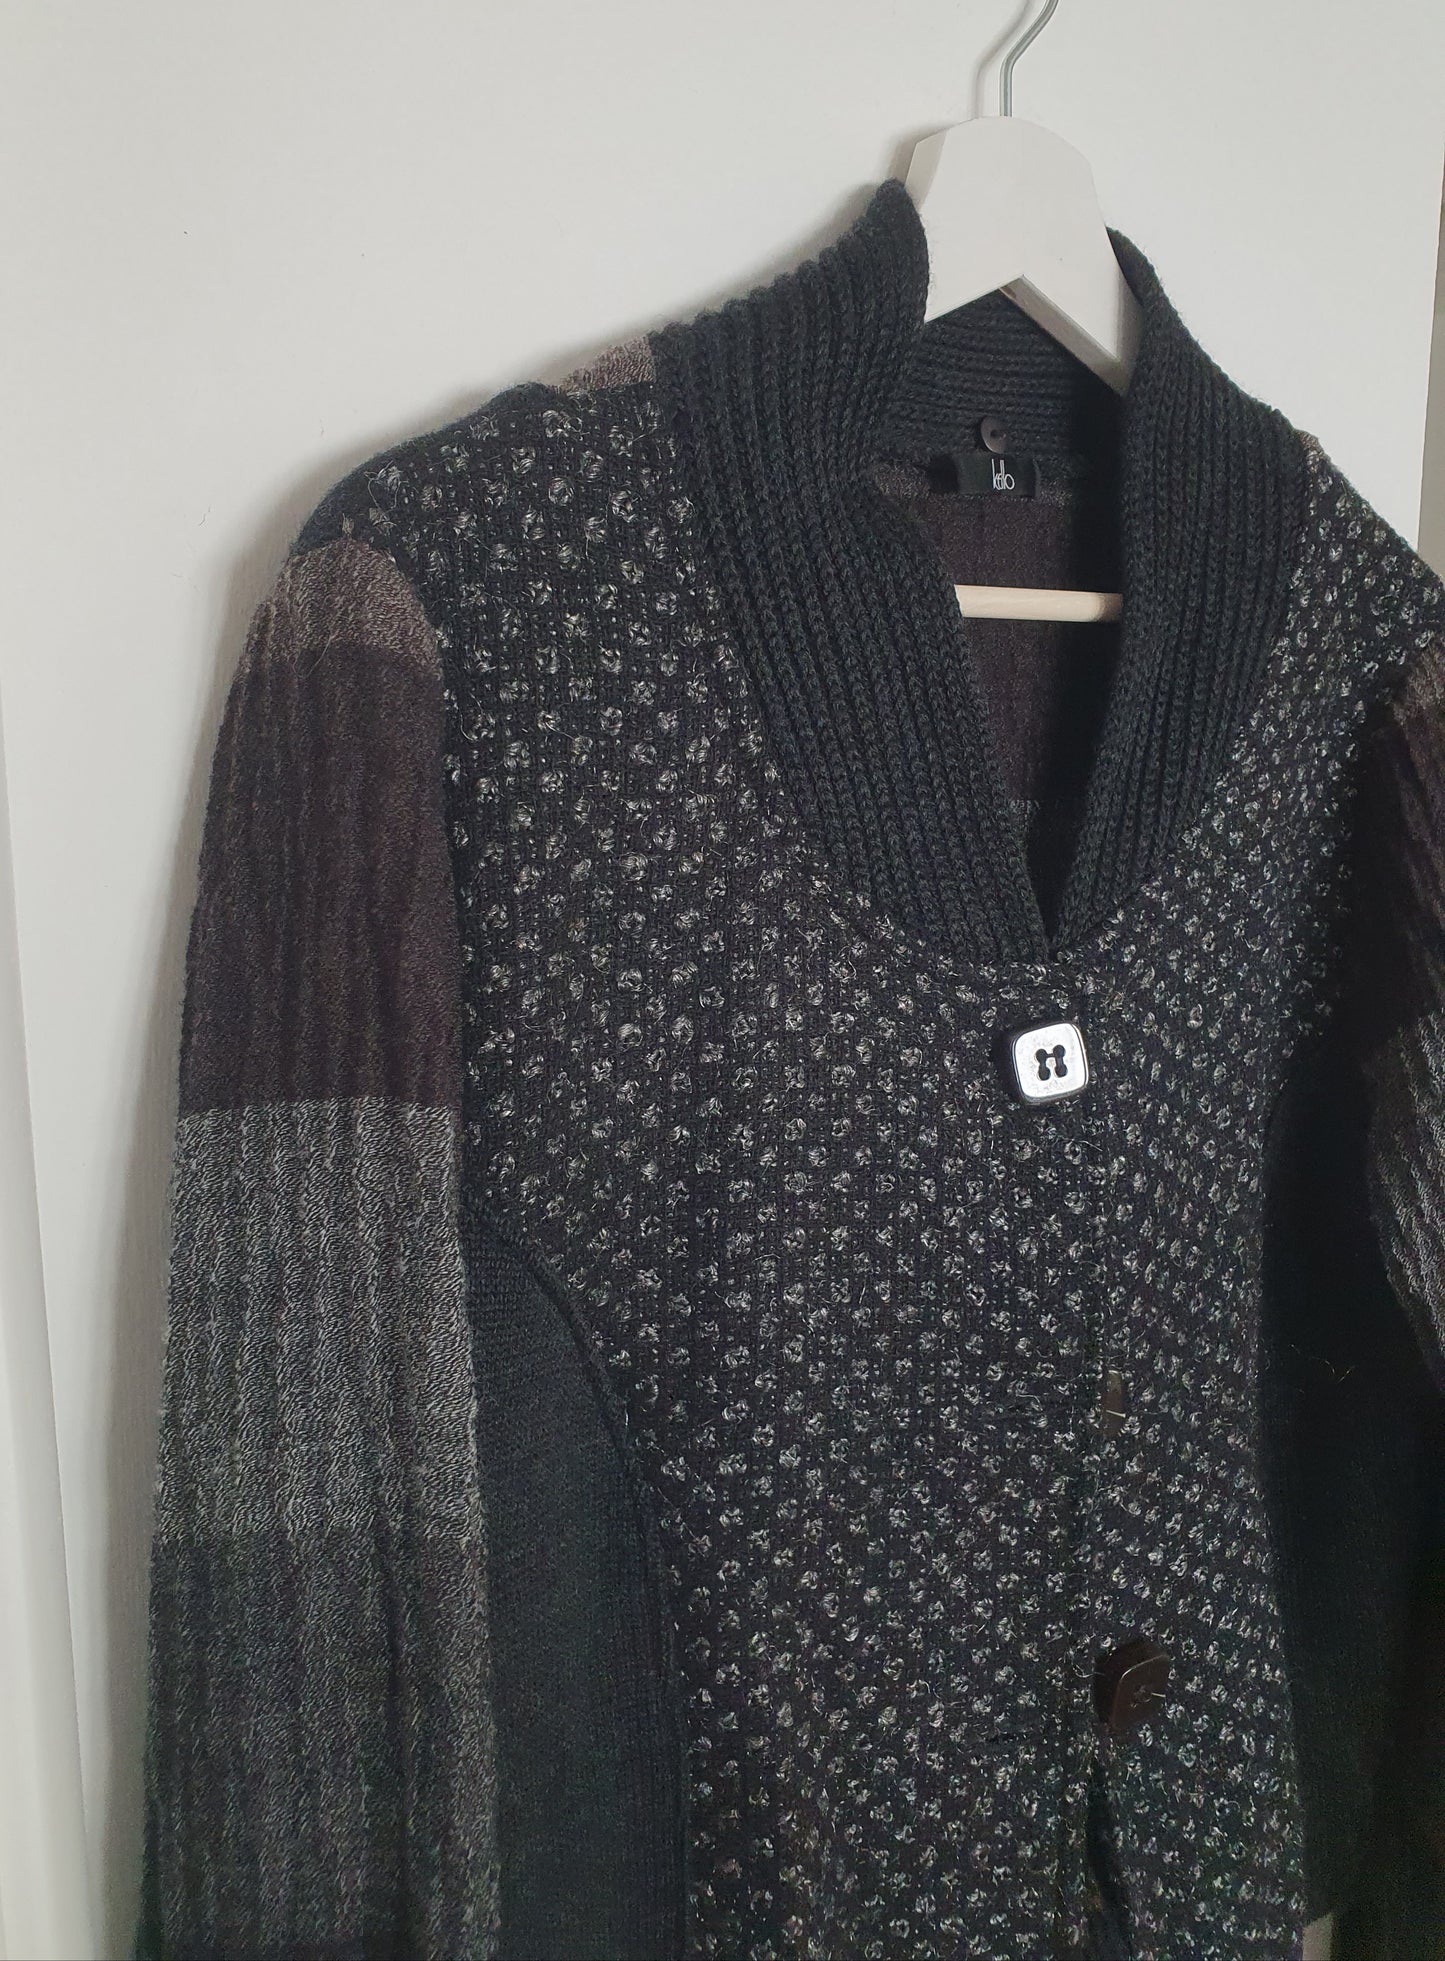 KELLO vunena jakna danskog brenda od kombiniranih materijala/uzoraka